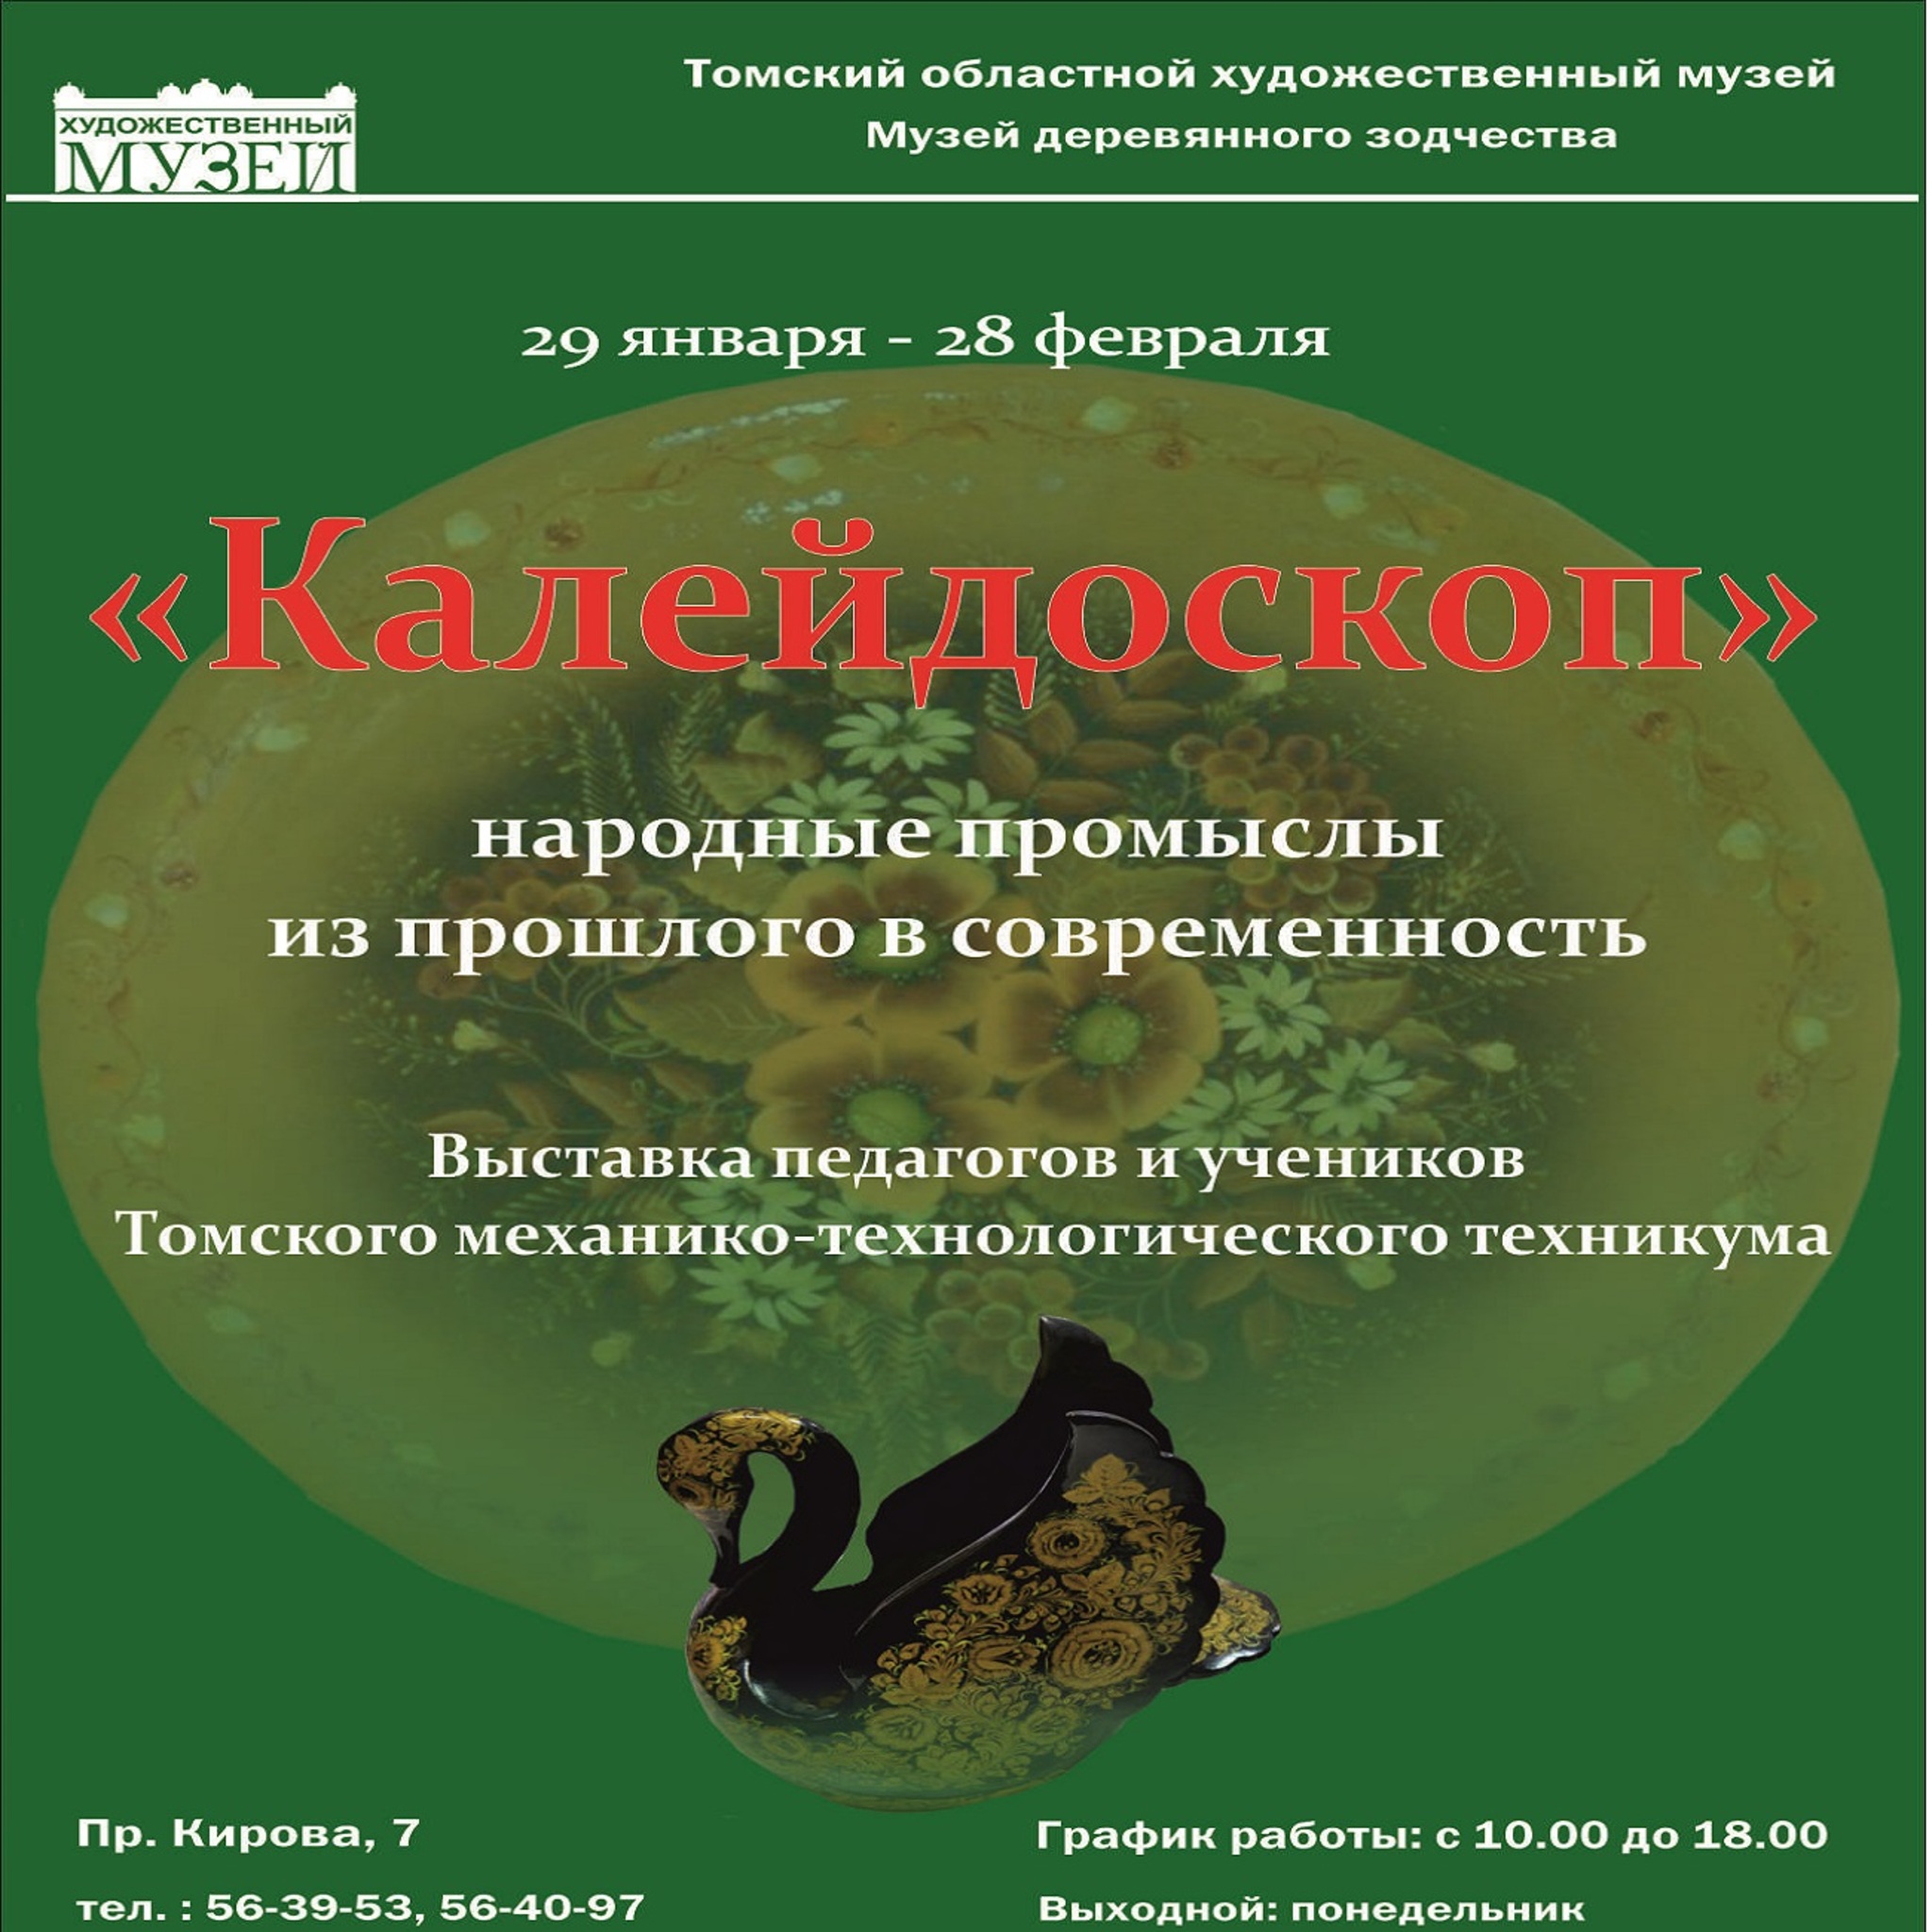 Выставка работ томского механико-технологического техникума «Калейдоскоп»